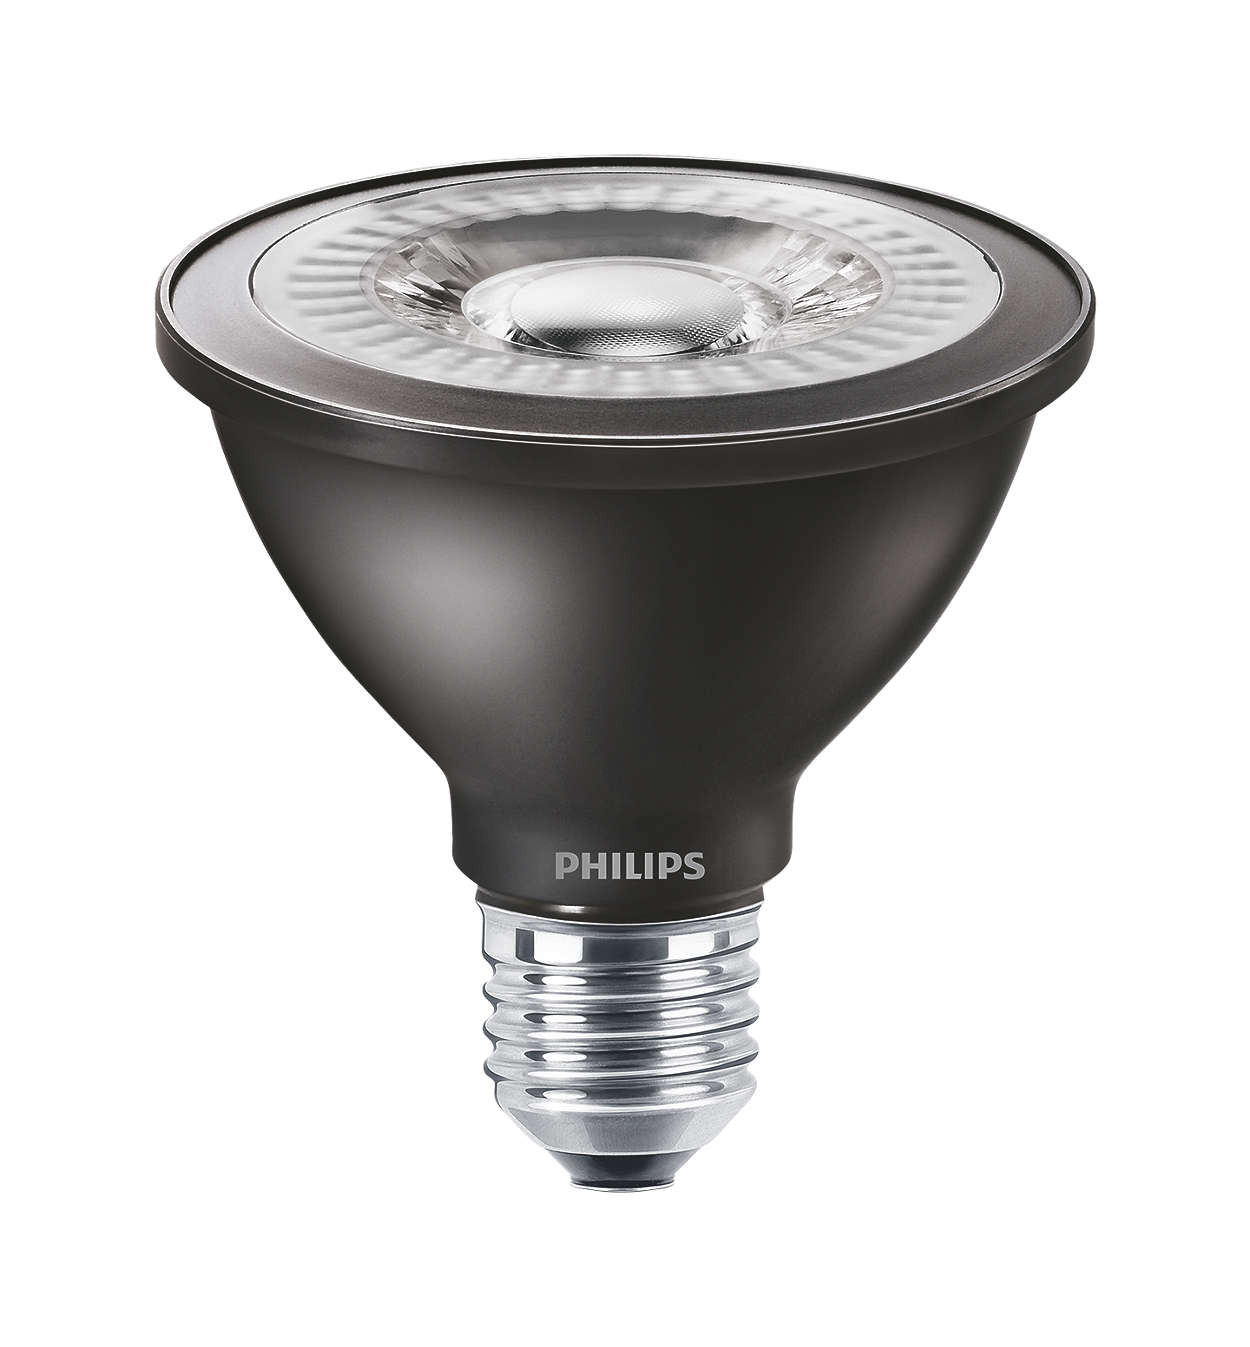 Philips MASTER LEDspot D 8.5-75W 840 PAR30S 25D